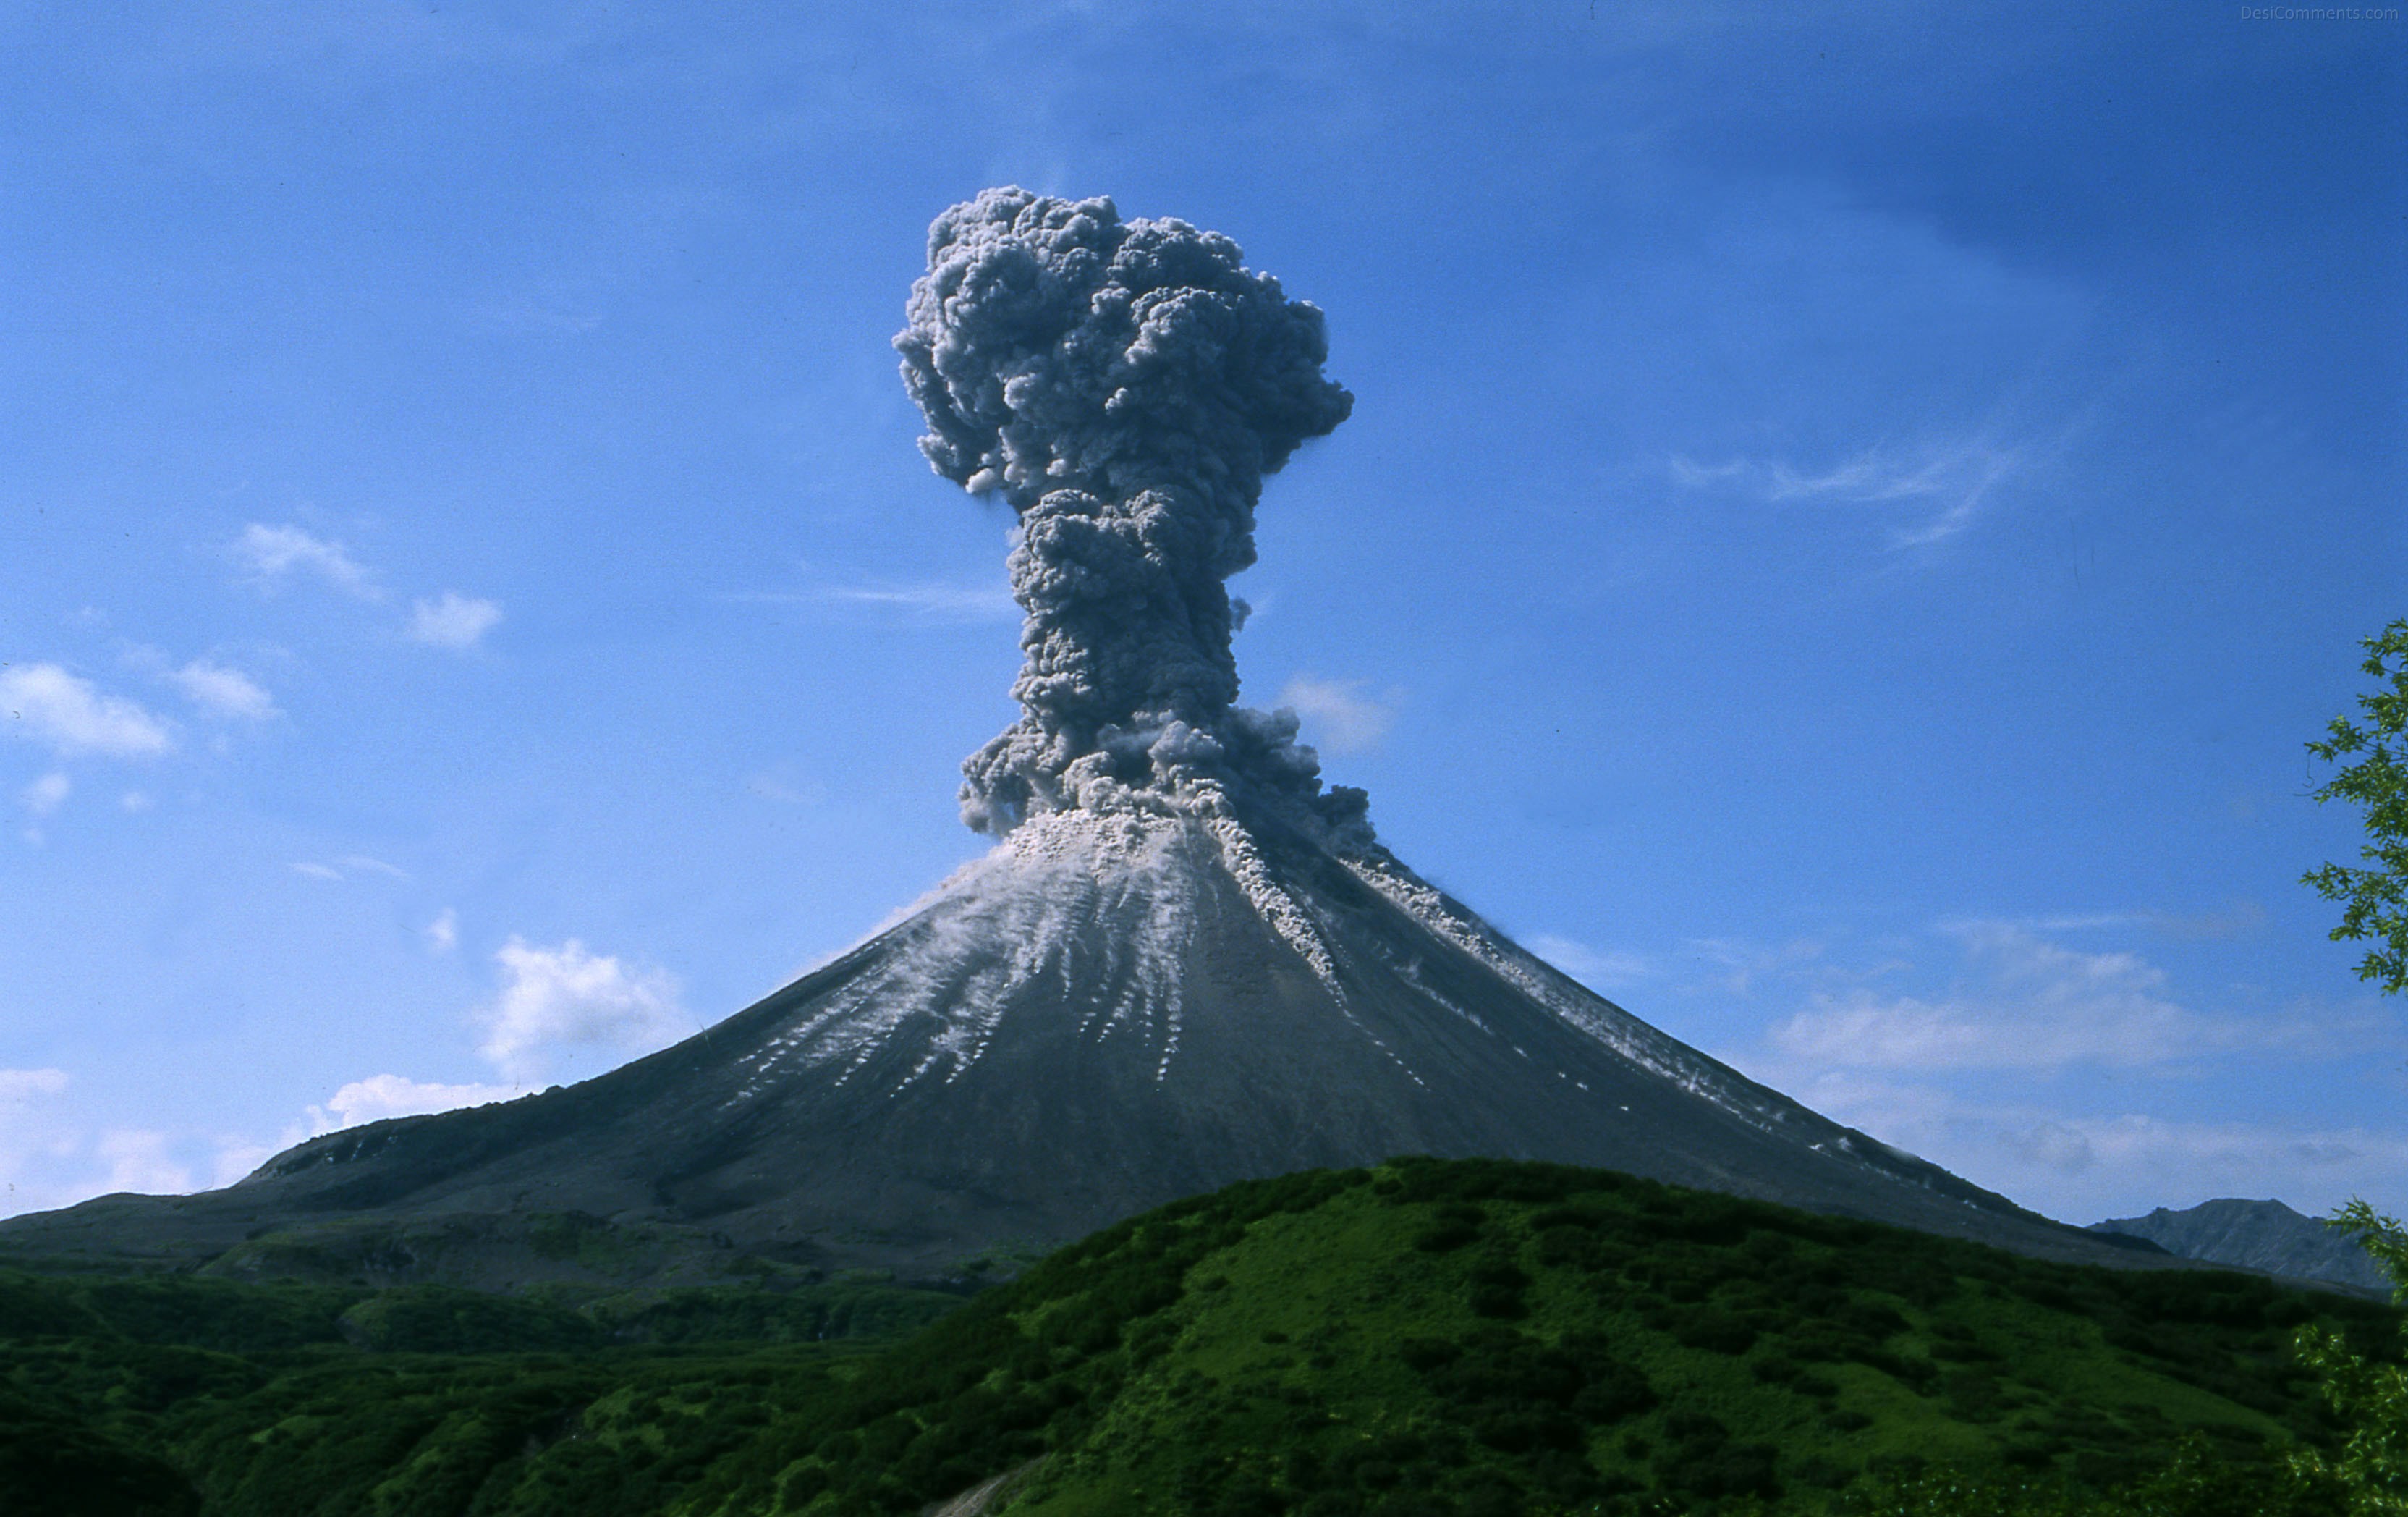 photo de référence pour le dessin du volcan 2